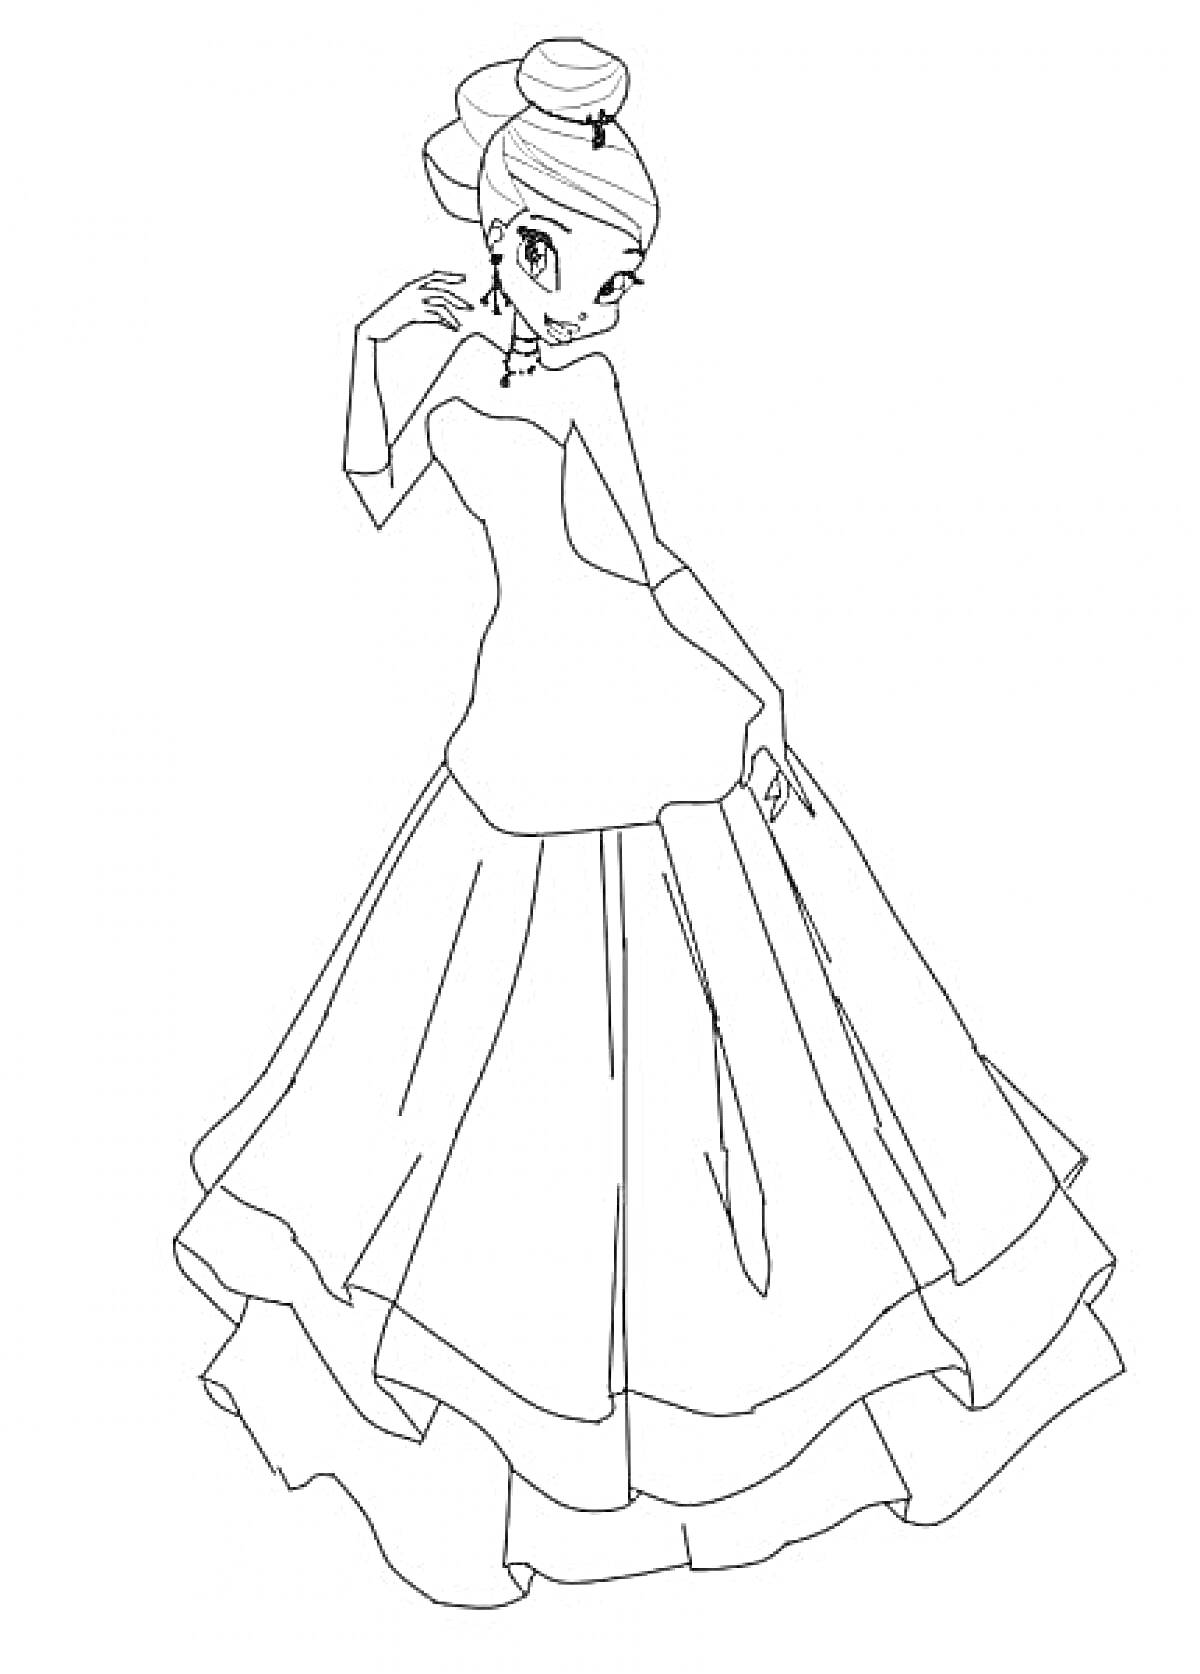 Раскраска Принцесса из Винкс с высокой причёской и в длинном платье